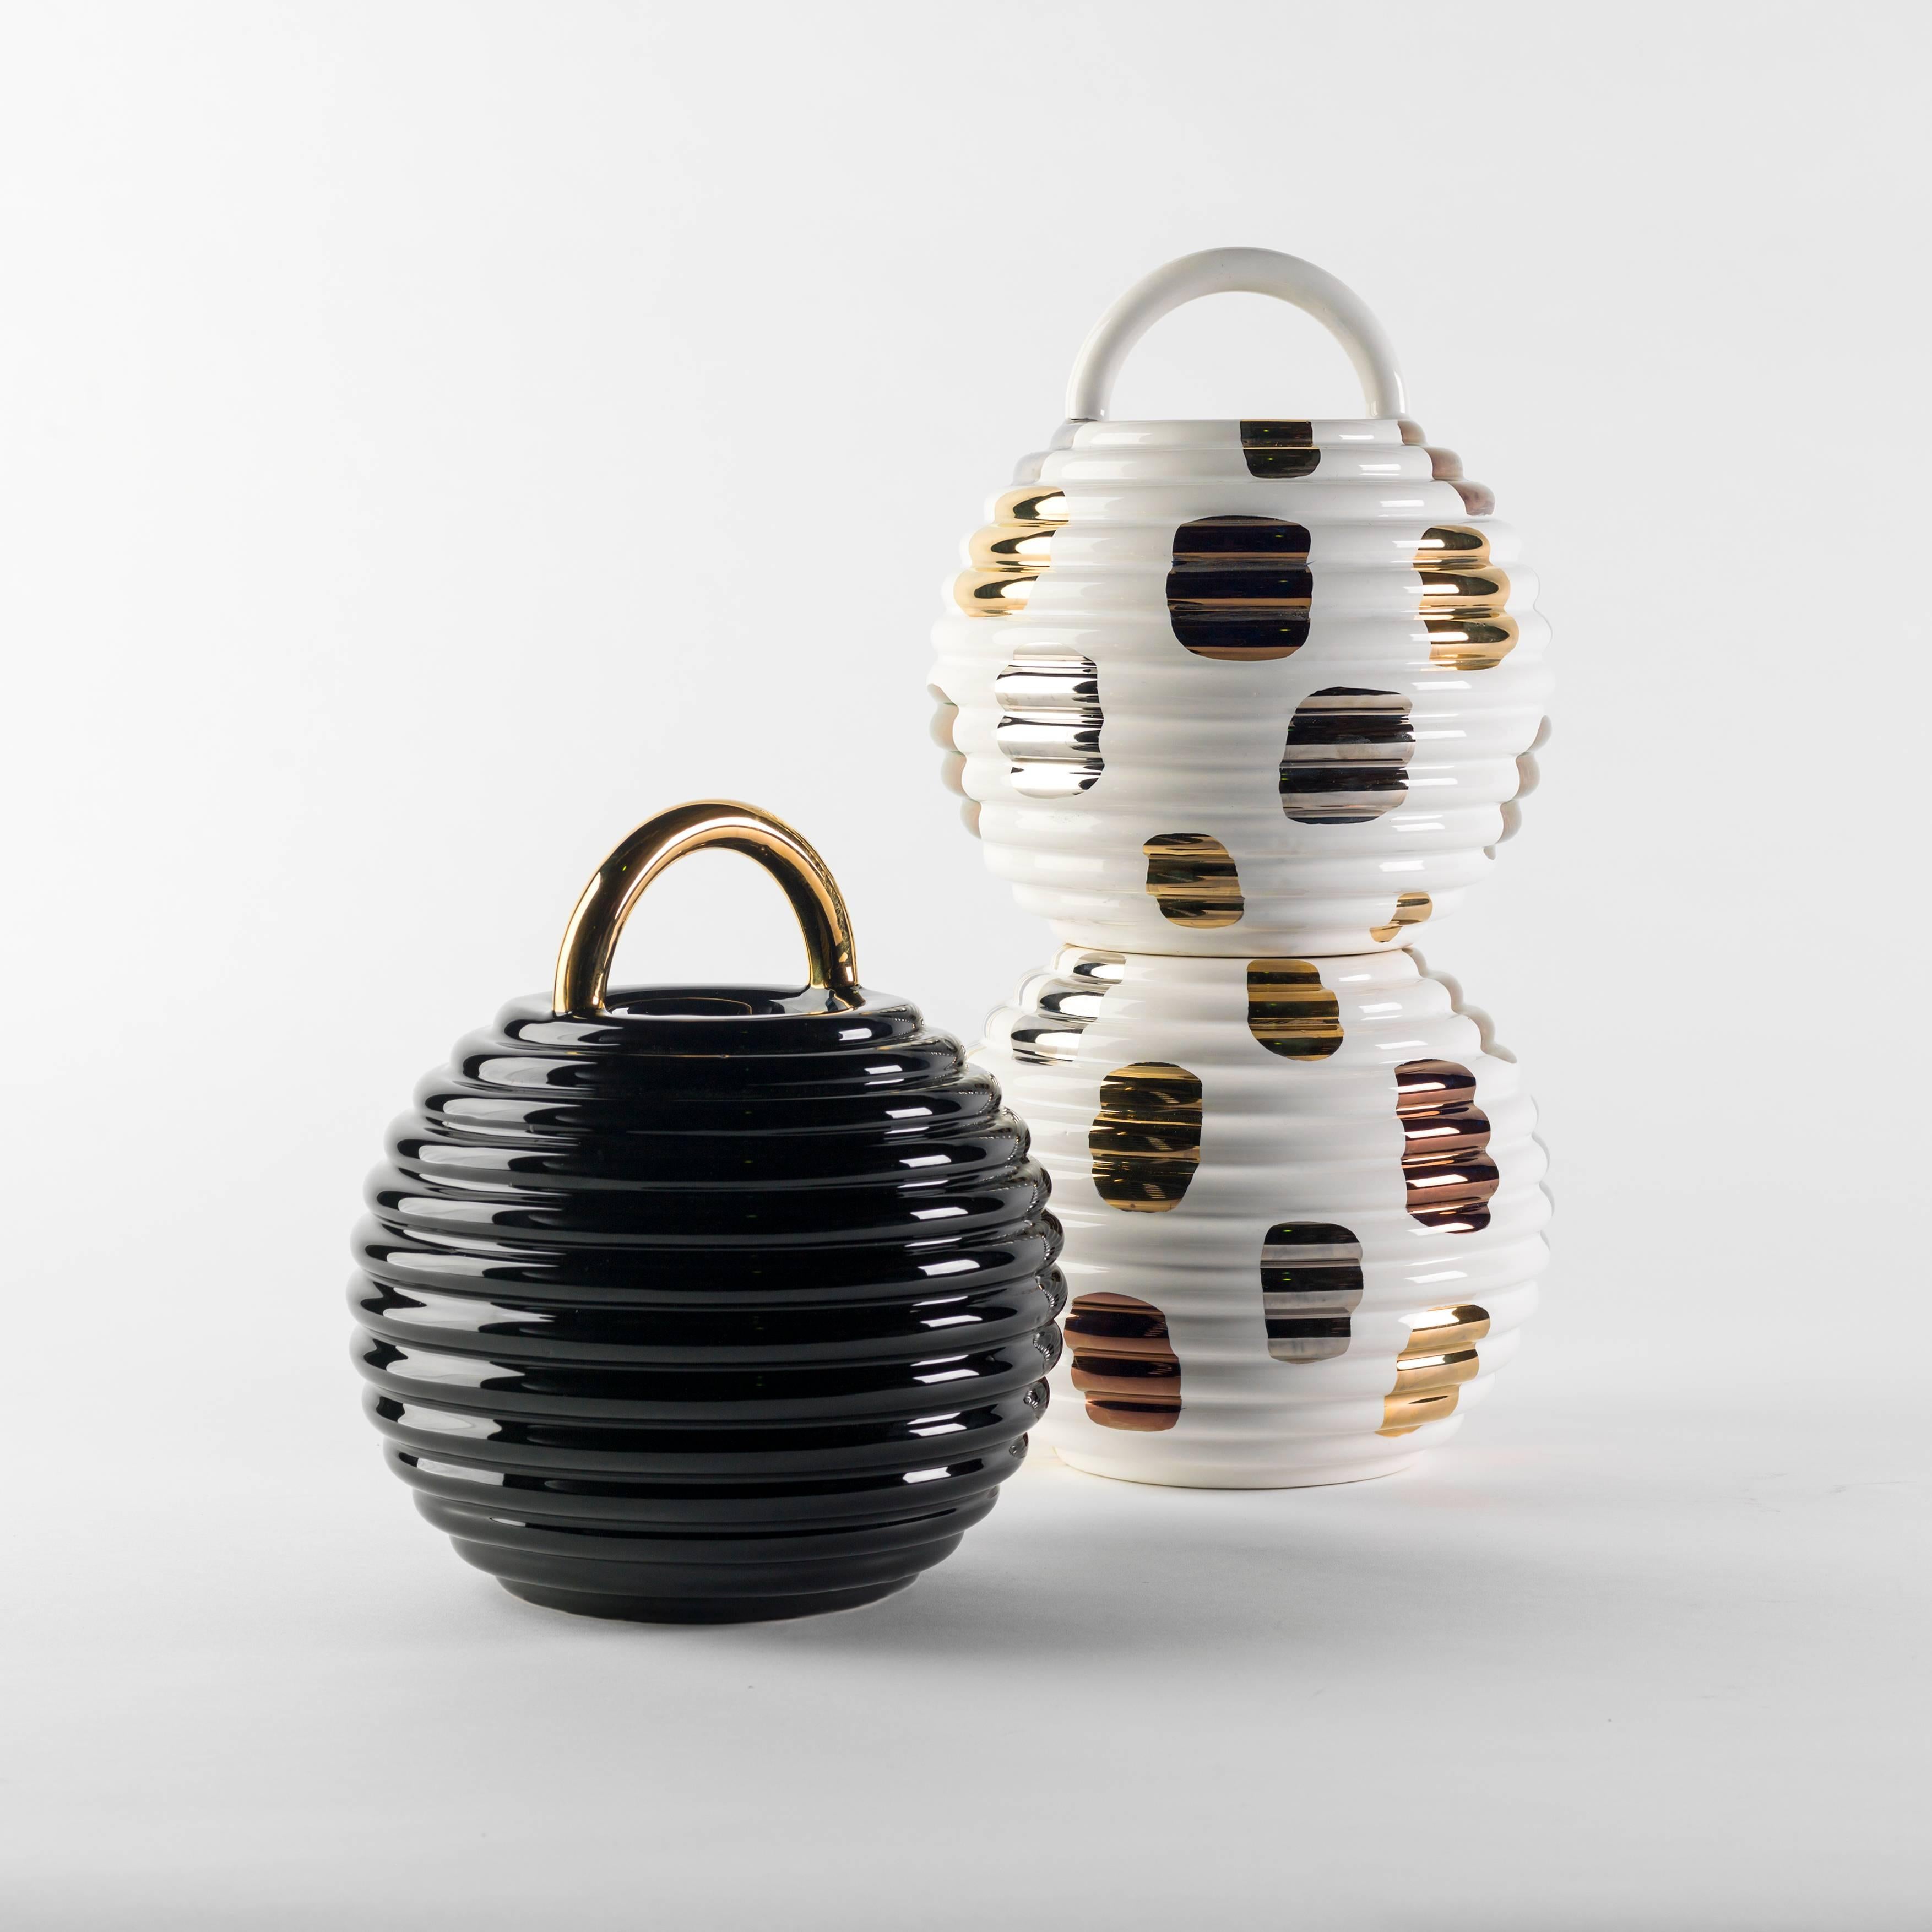 Spanish Grasso Vases by Stephen Burks